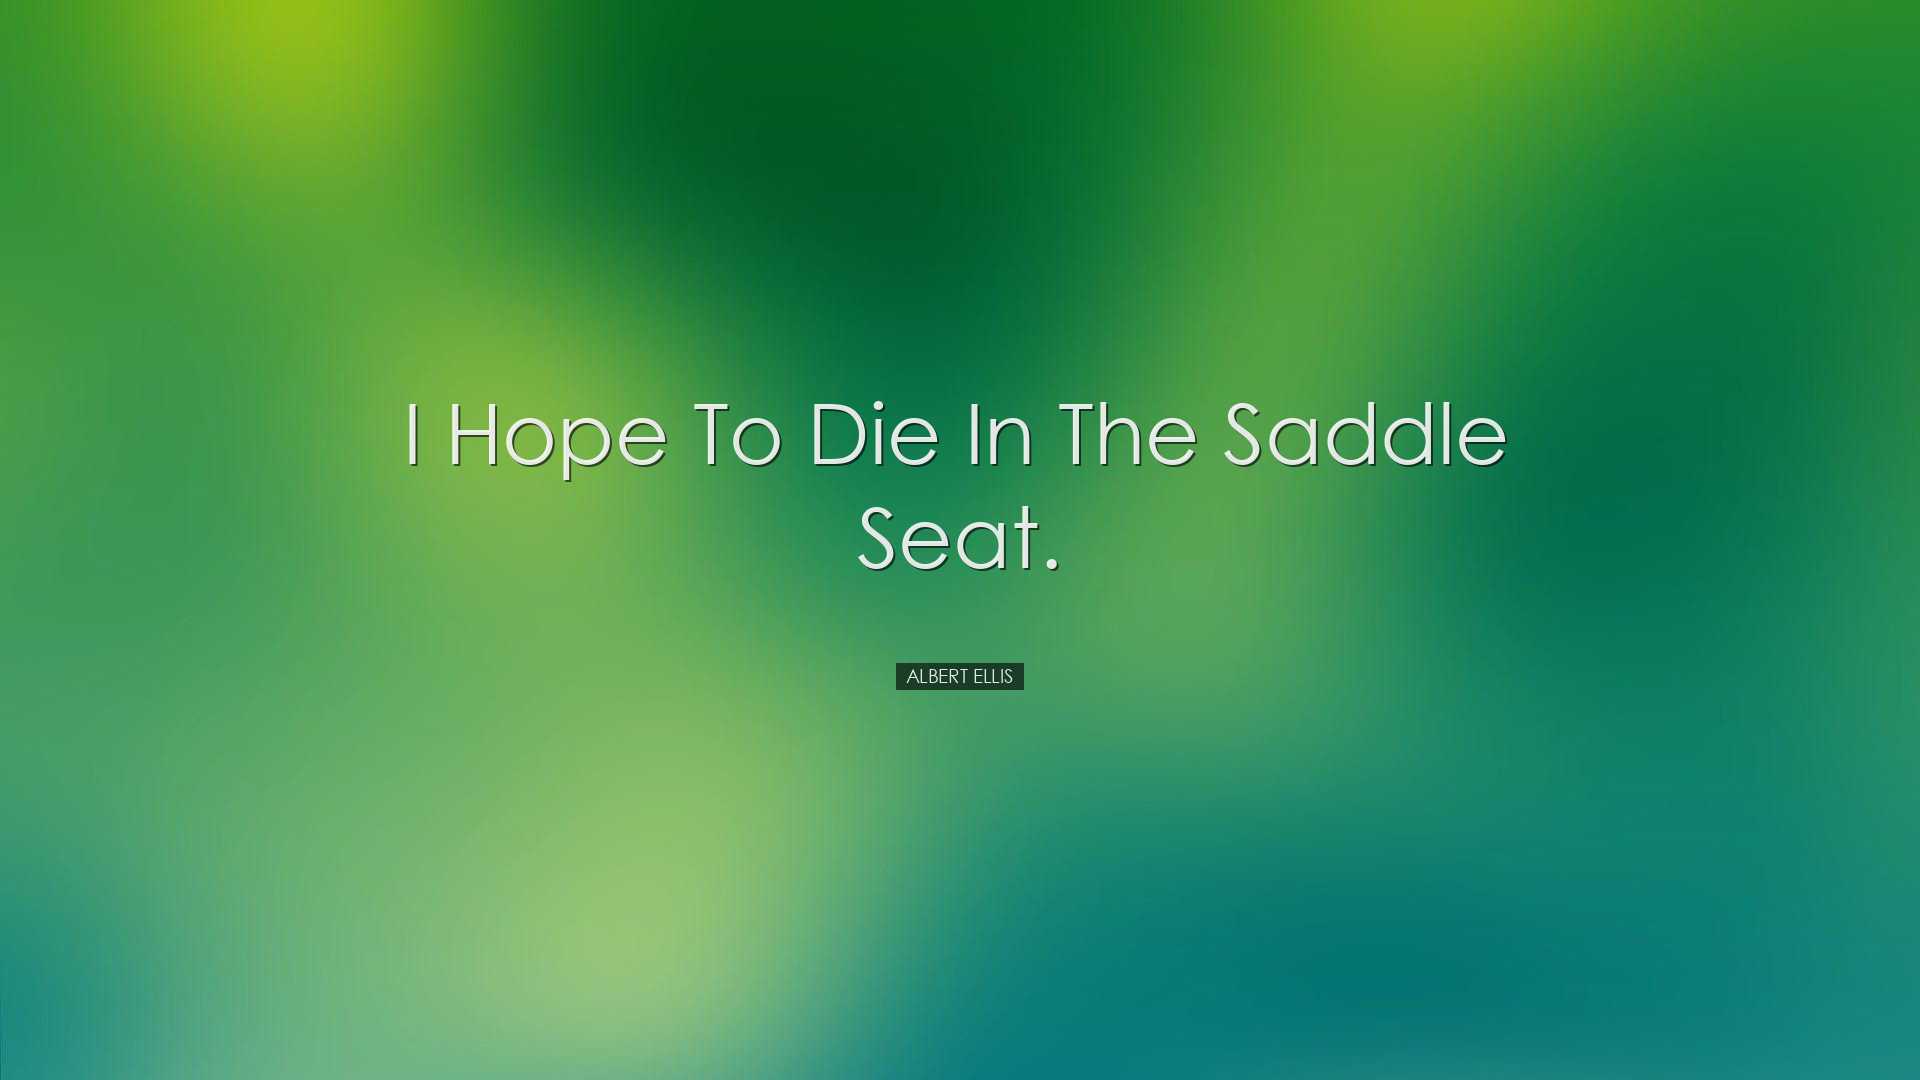 I hope to die in the saddle seat. - Albert Ellis